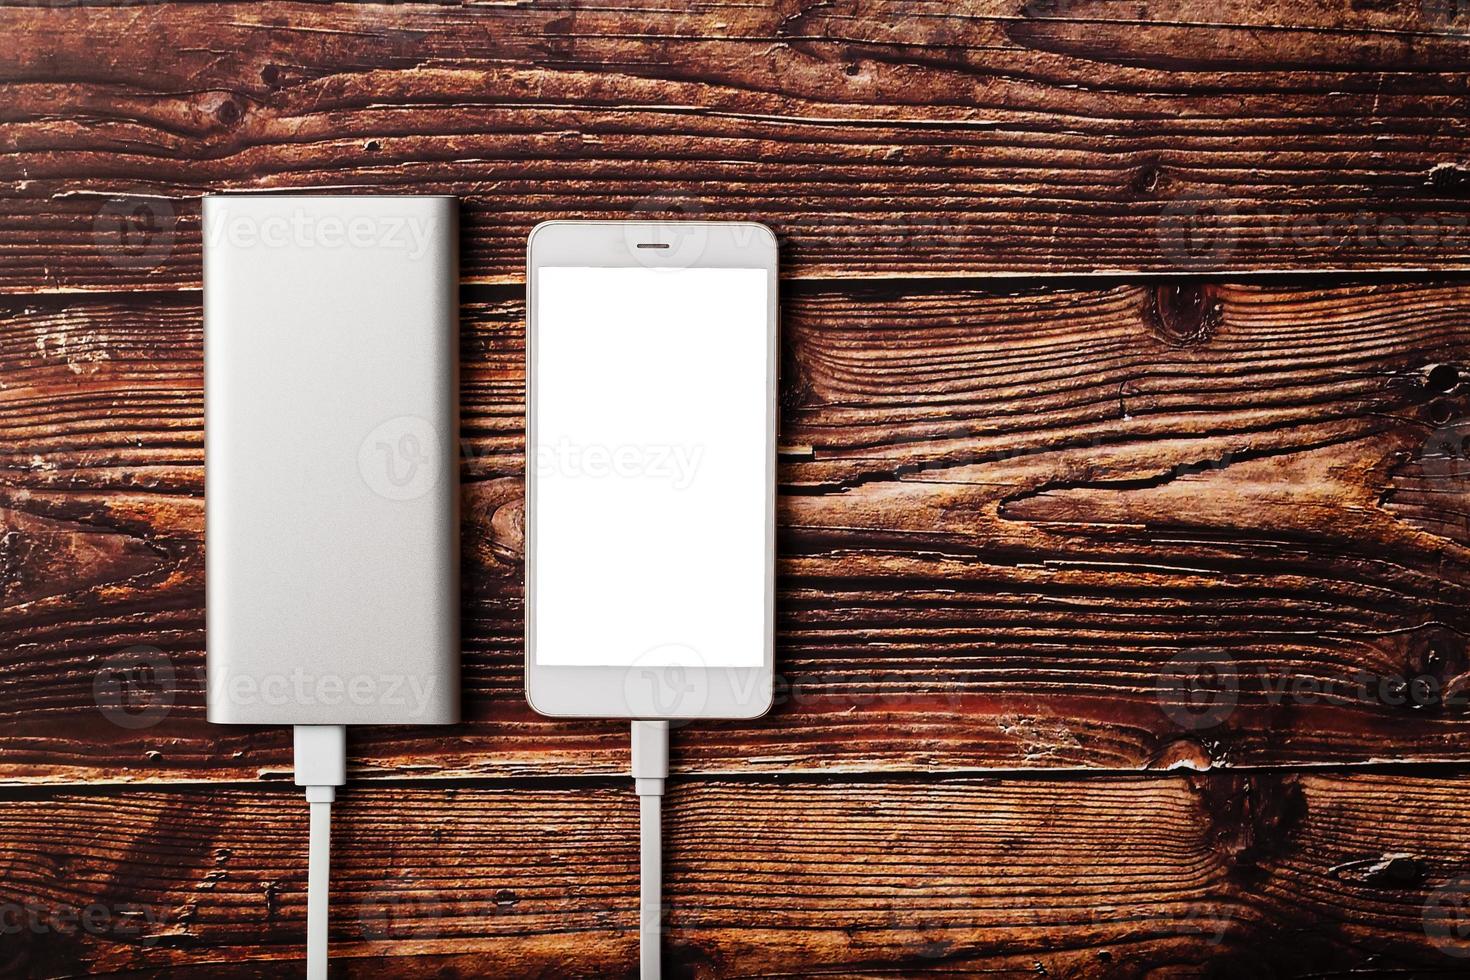 powerbank carrega um smartphone em um fundo de madeira. bateria externa universal para gadgets espaço livre e composição minimalista. foto